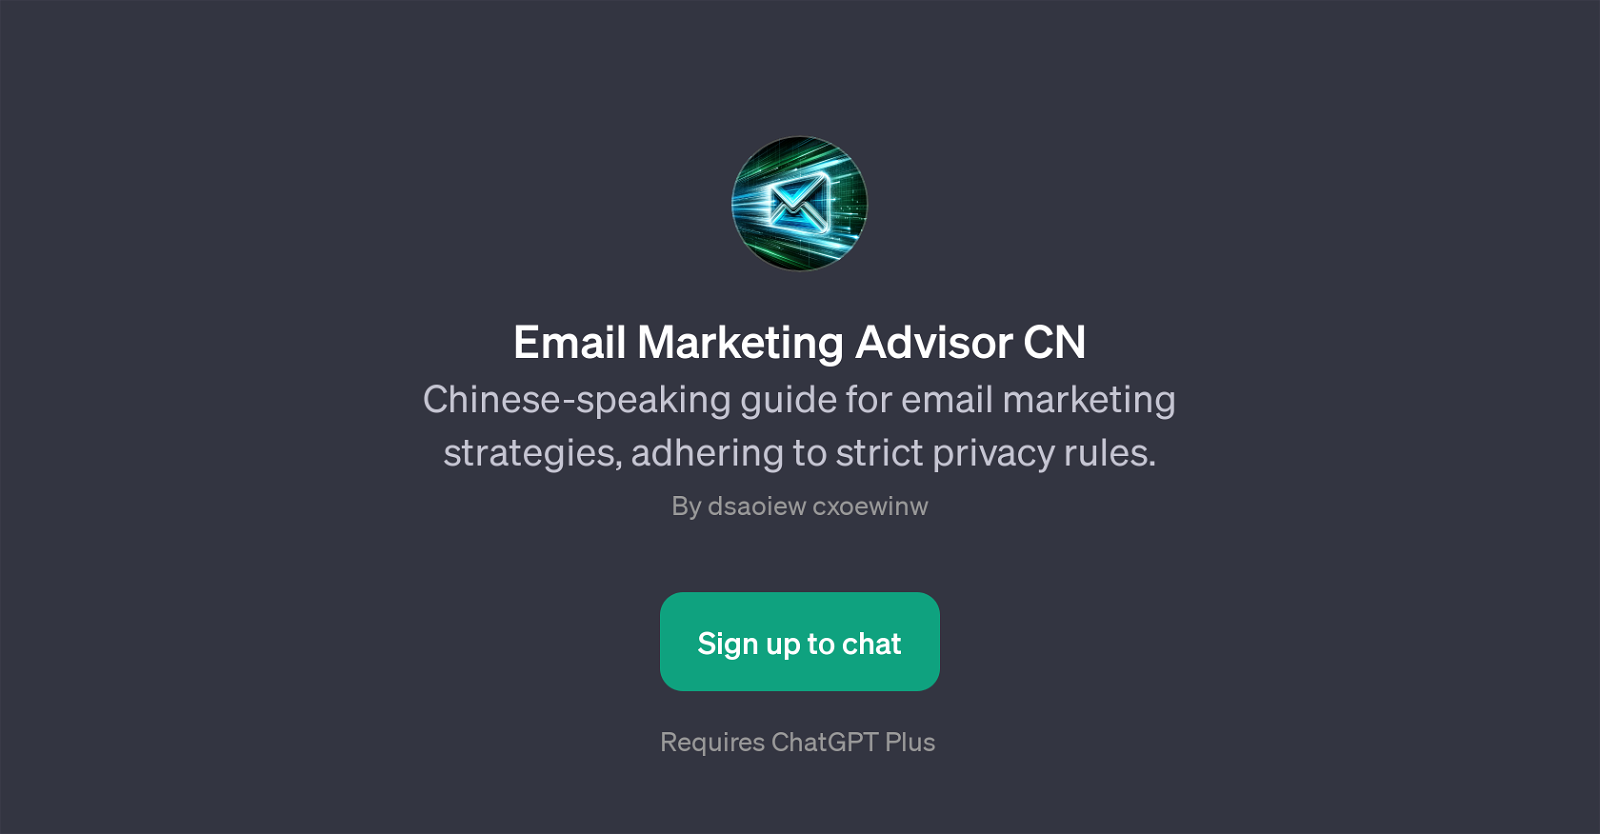 Email Marketing Advisor CN website